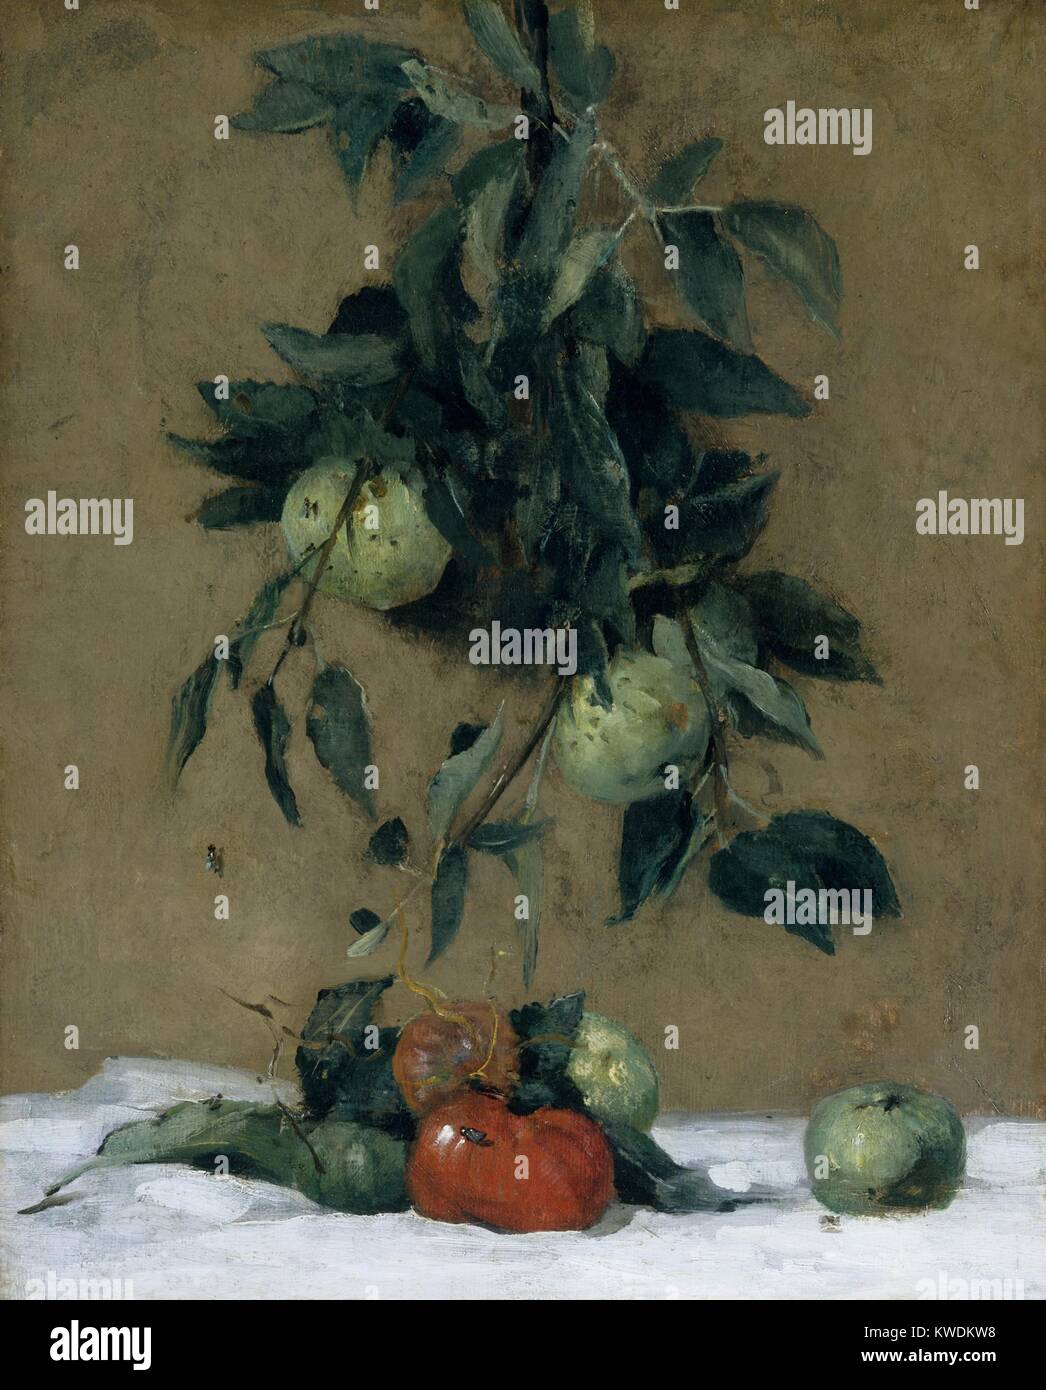 Les fruits, par Julian Alden Weir, 1888, American peinture, huile sur toile. Cette vie toujours réaliste, vigoureusement peint avec le pinceau magistral, a un bijou comme tomate rouge parmi le vert pomme (BSLOC 2017 9 30) Banque D'Images